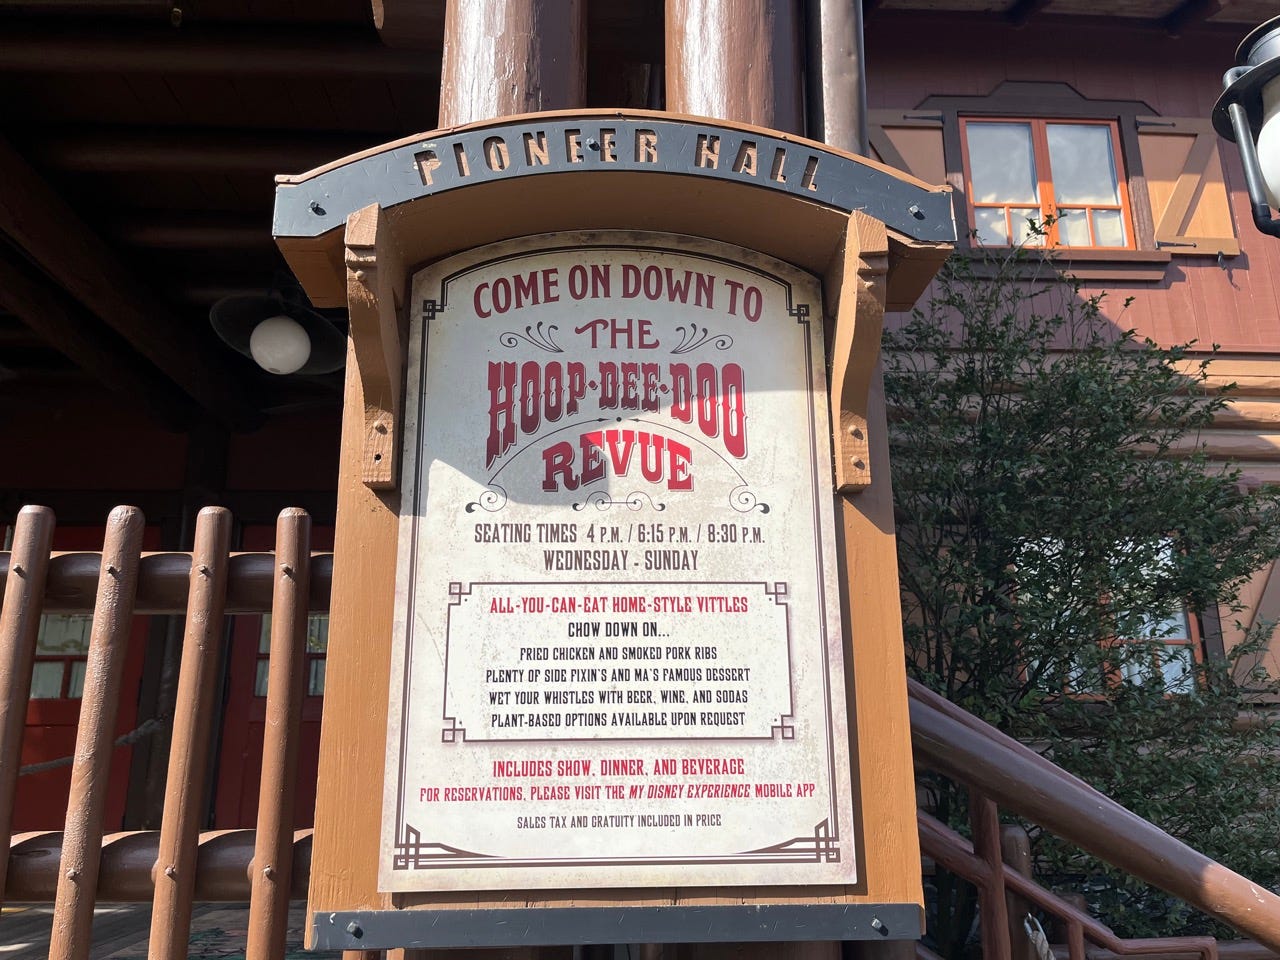 Hoop Dee Doo Review-Schild vor der Pioneer Hall bei Disney